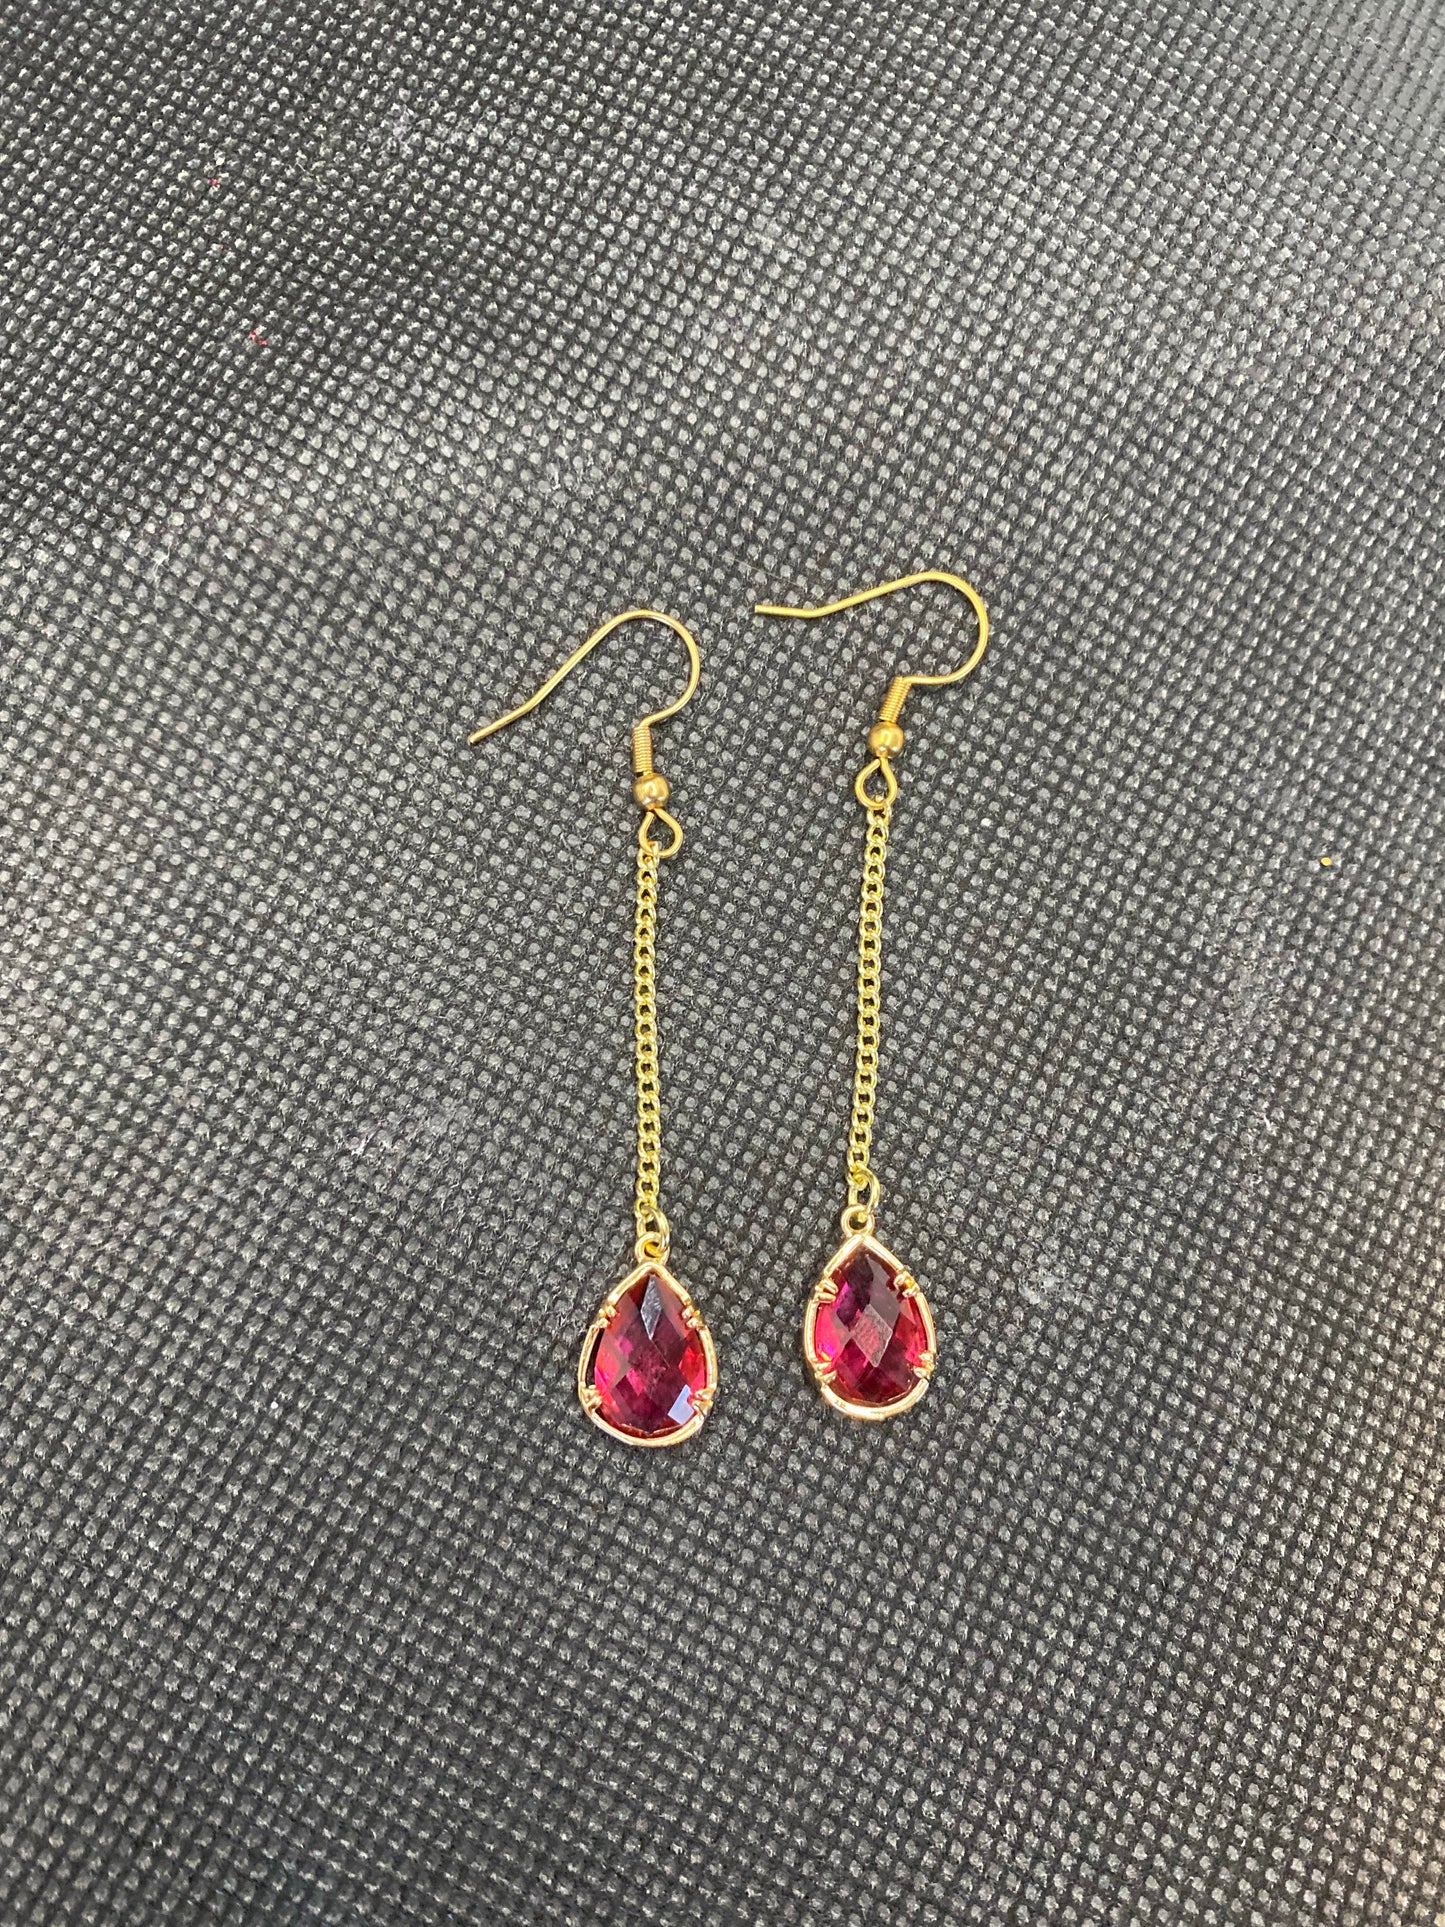 Garnet drop earrings - January birthstone